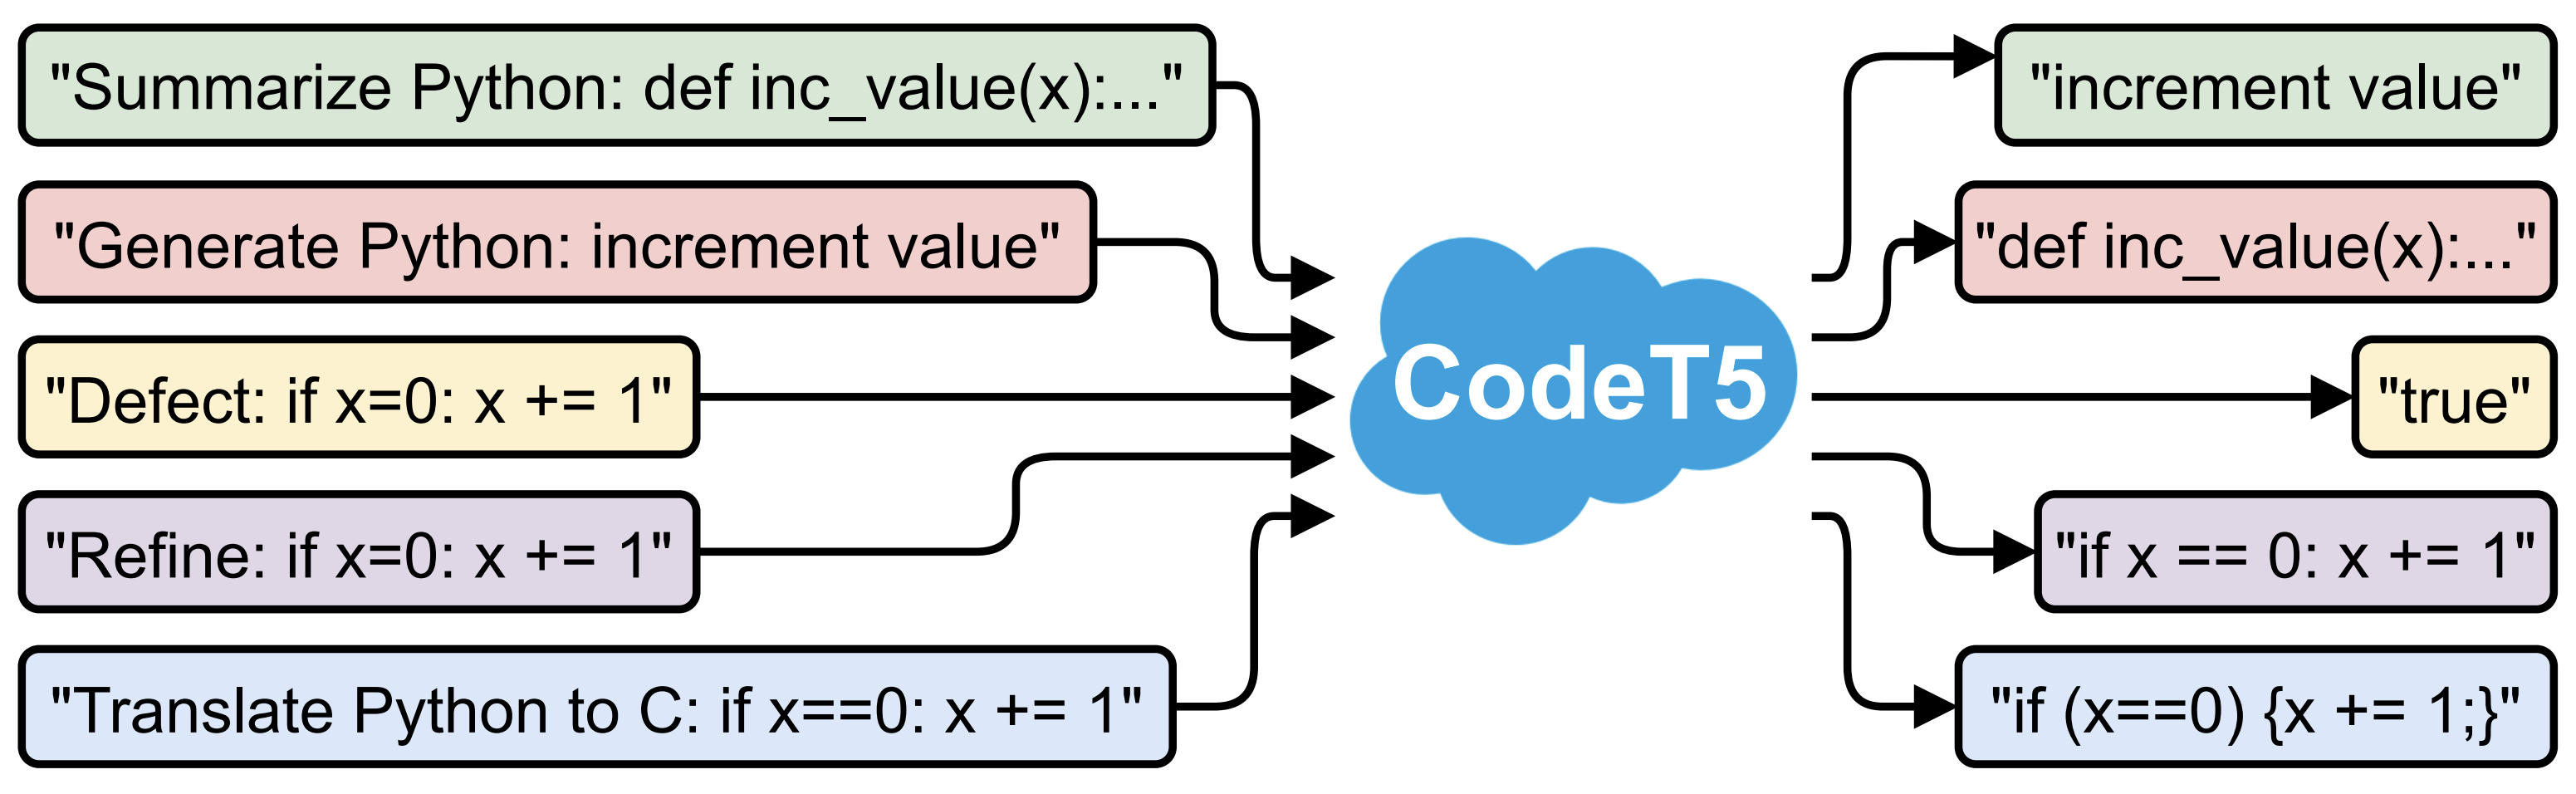 CodeT5 framework